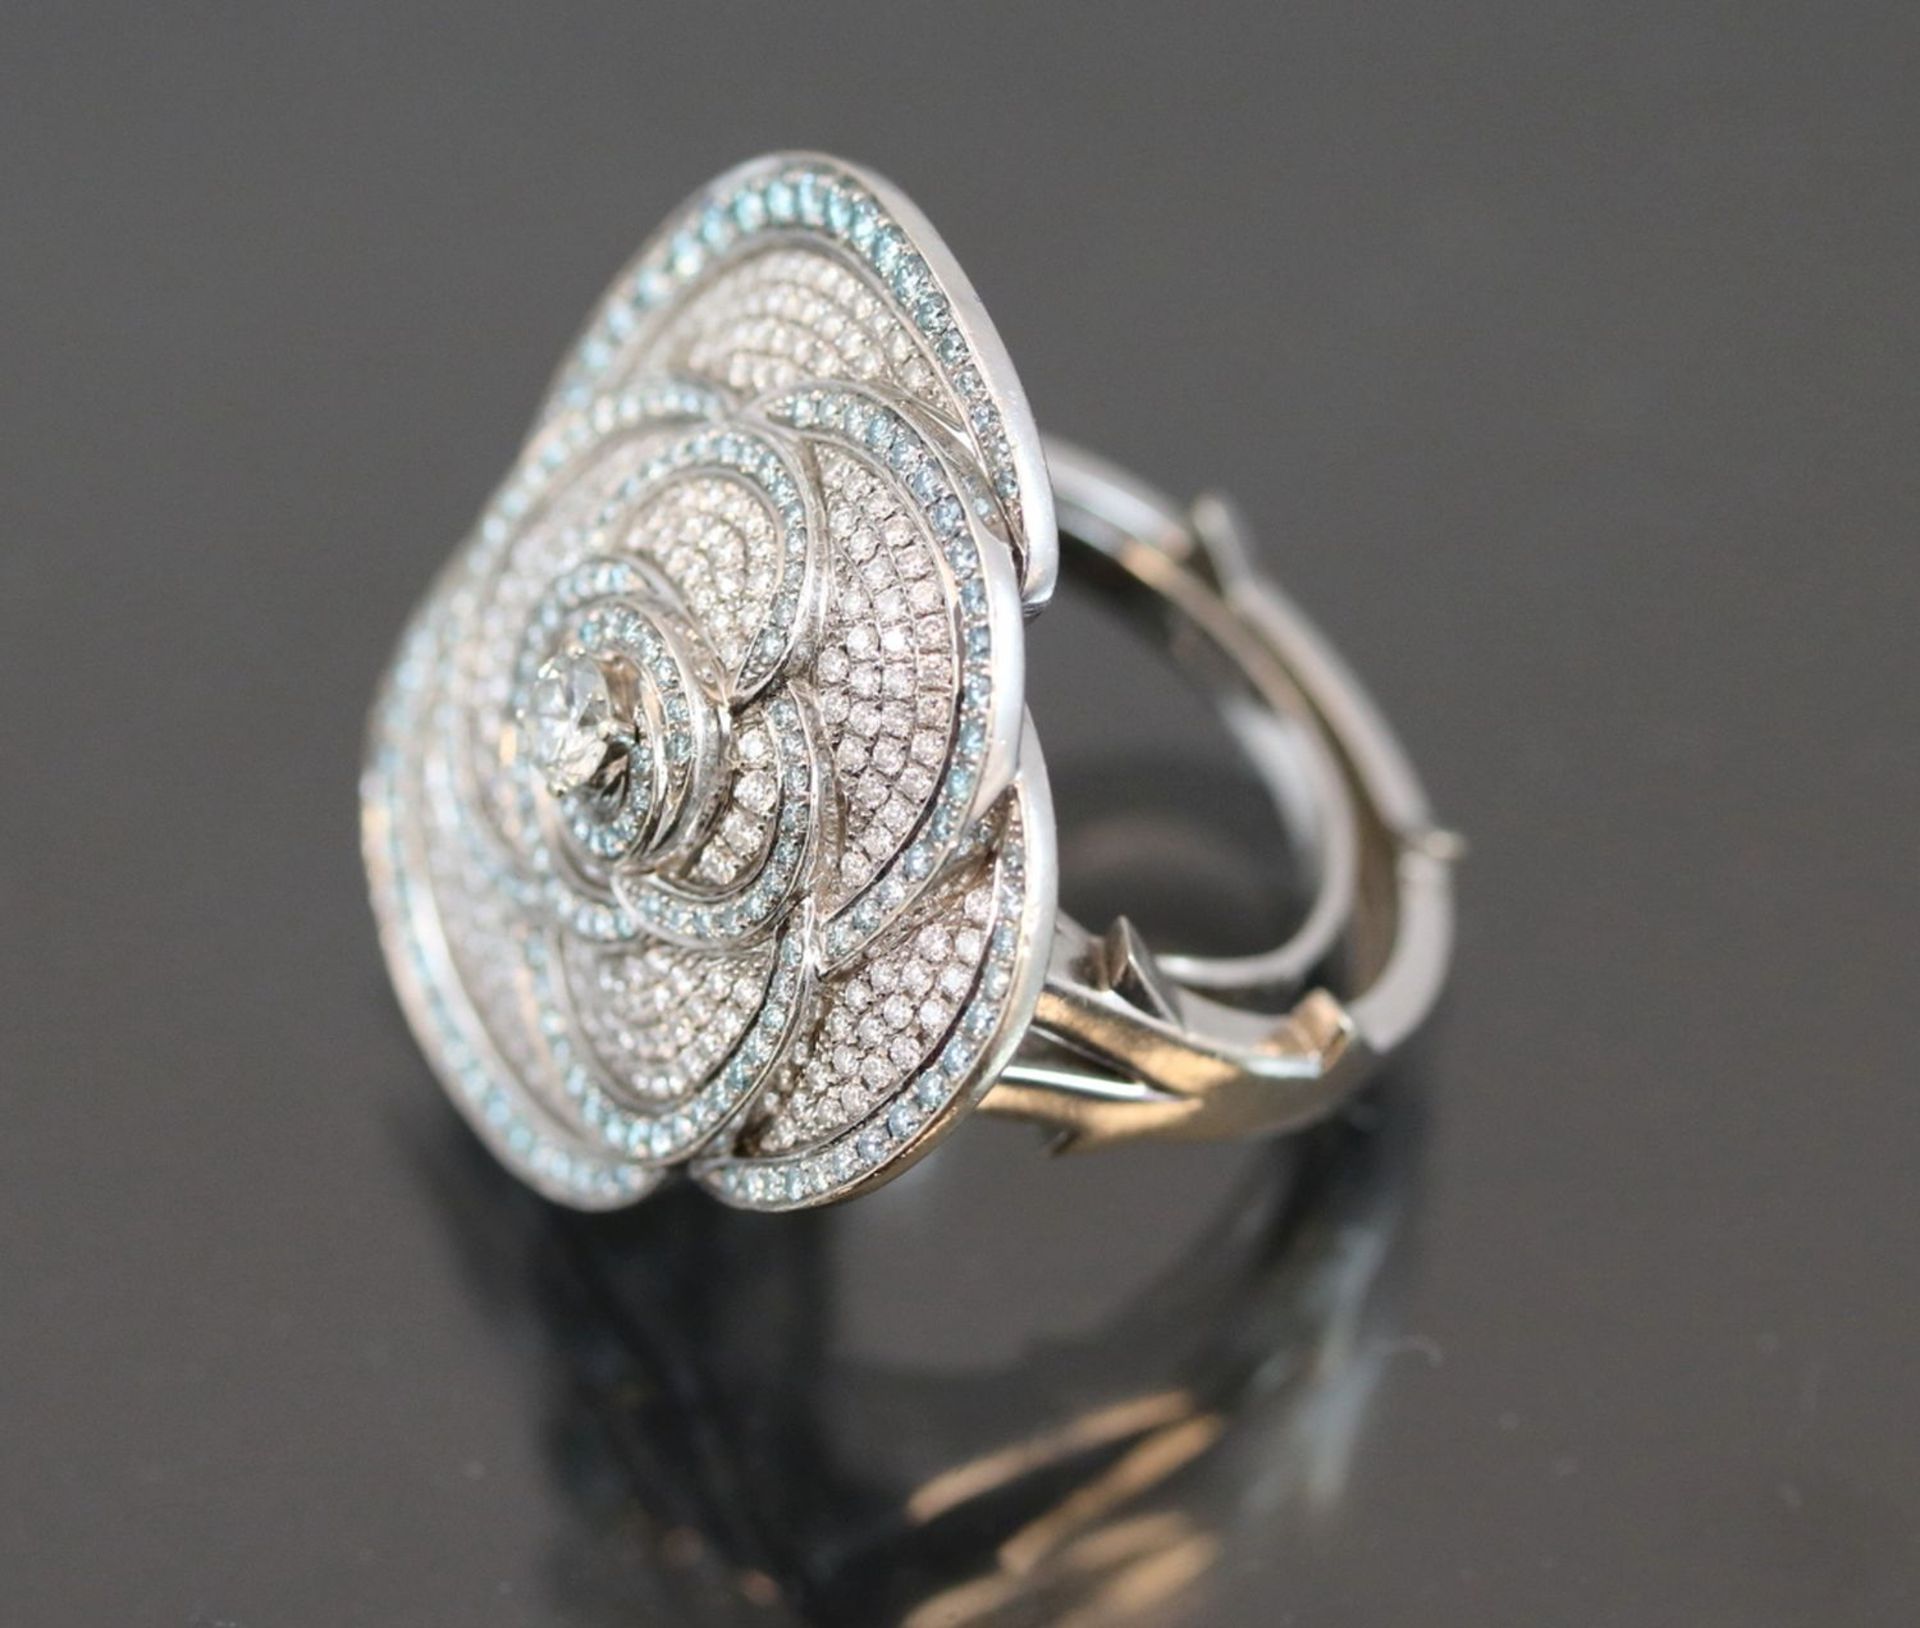 Brillant-Ring, 750 Weißgold19,2 Gramm Brillanten, Ringgröße: 58Ringkopf in Rosenform. - Bild 2 aus 4